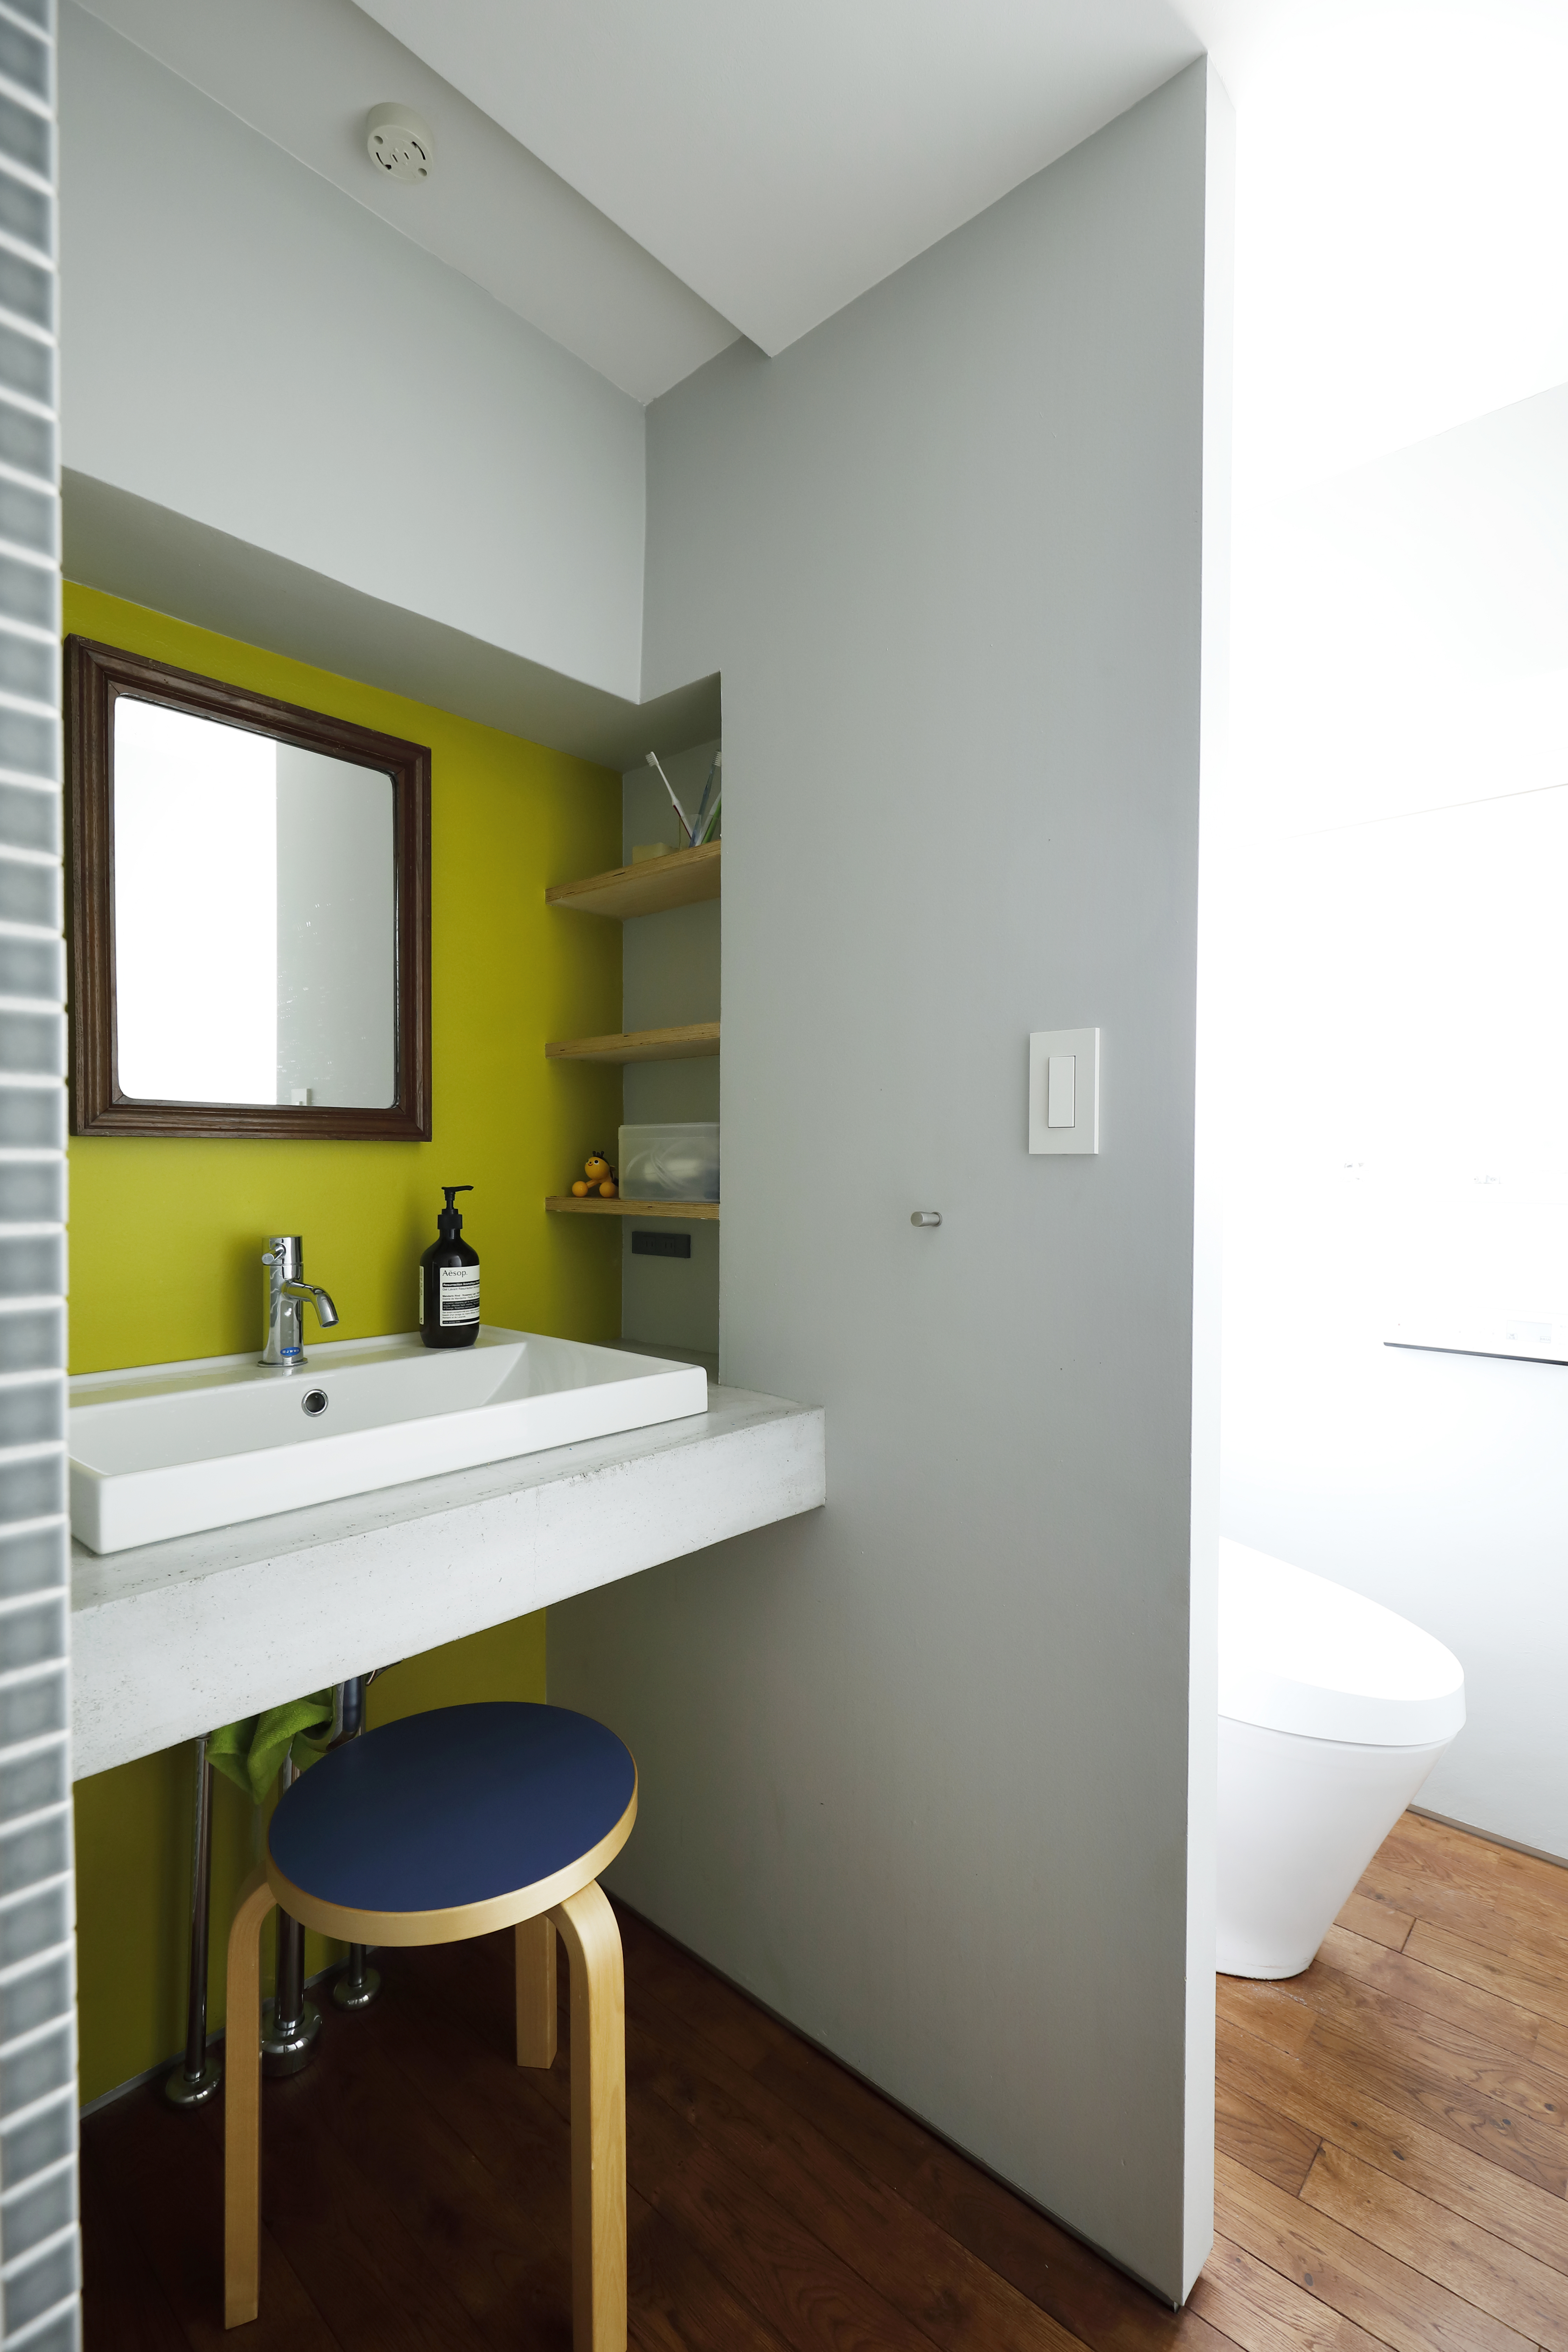 トイレと洗面所が一緒のおしゃれな間取りリノベーション実例 マンションの水回りをホテル仕様に変身 リノベーションのshuken Re